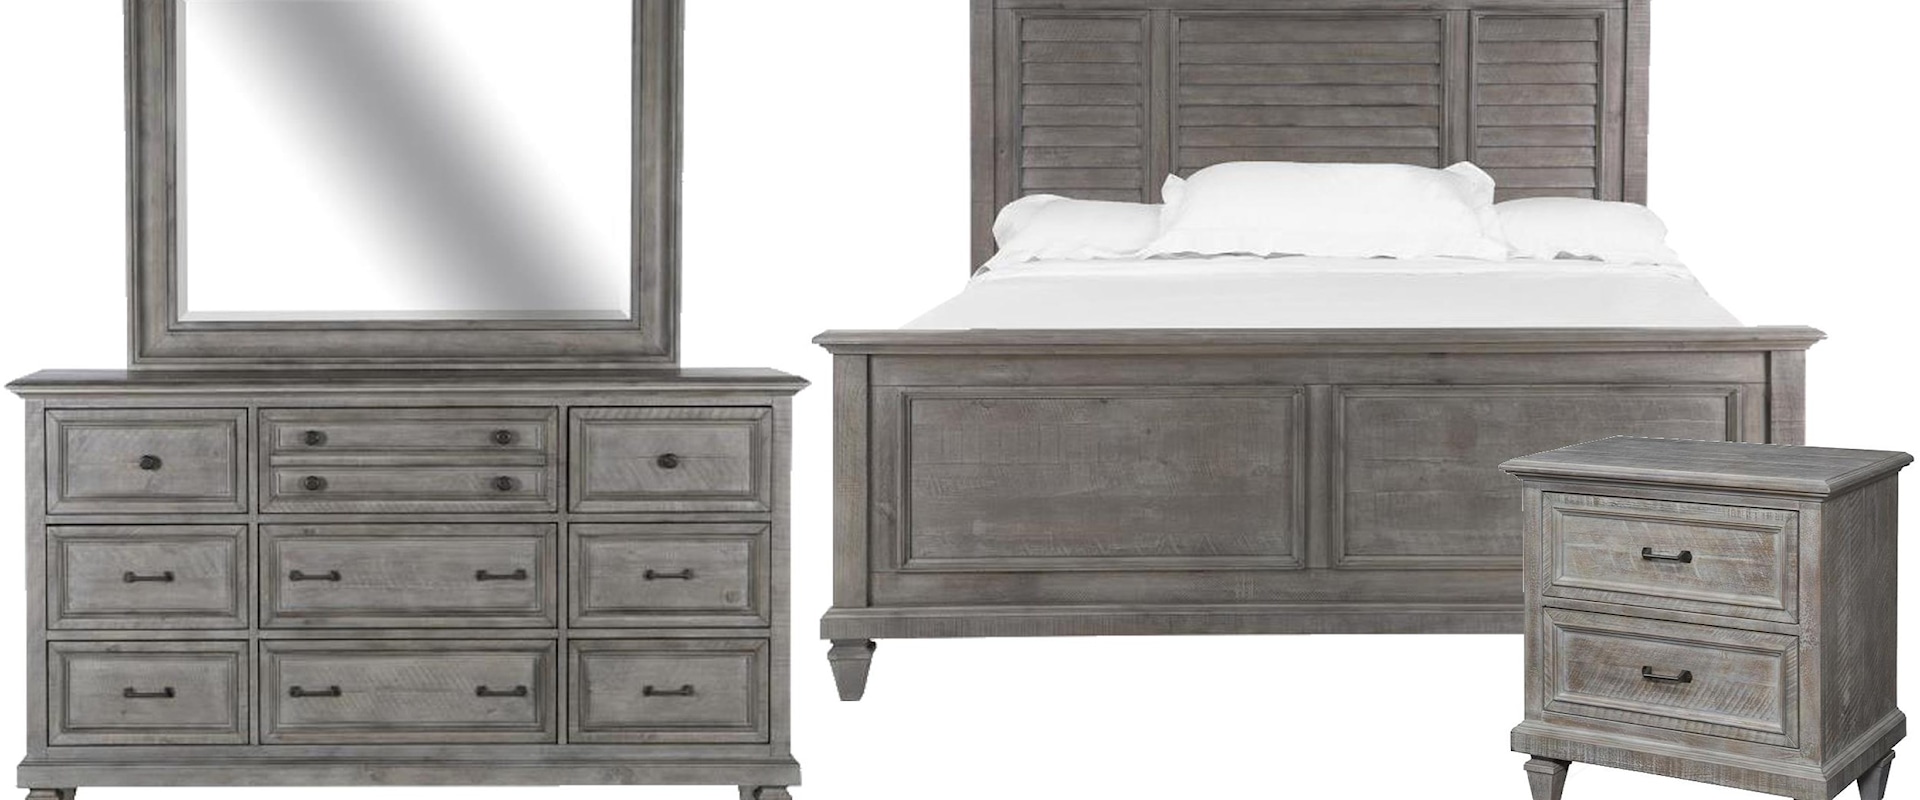 Queen Shutter Bed, 9 Drawer Dresser, Landscape Mirror, 2 Drawer Nightstand